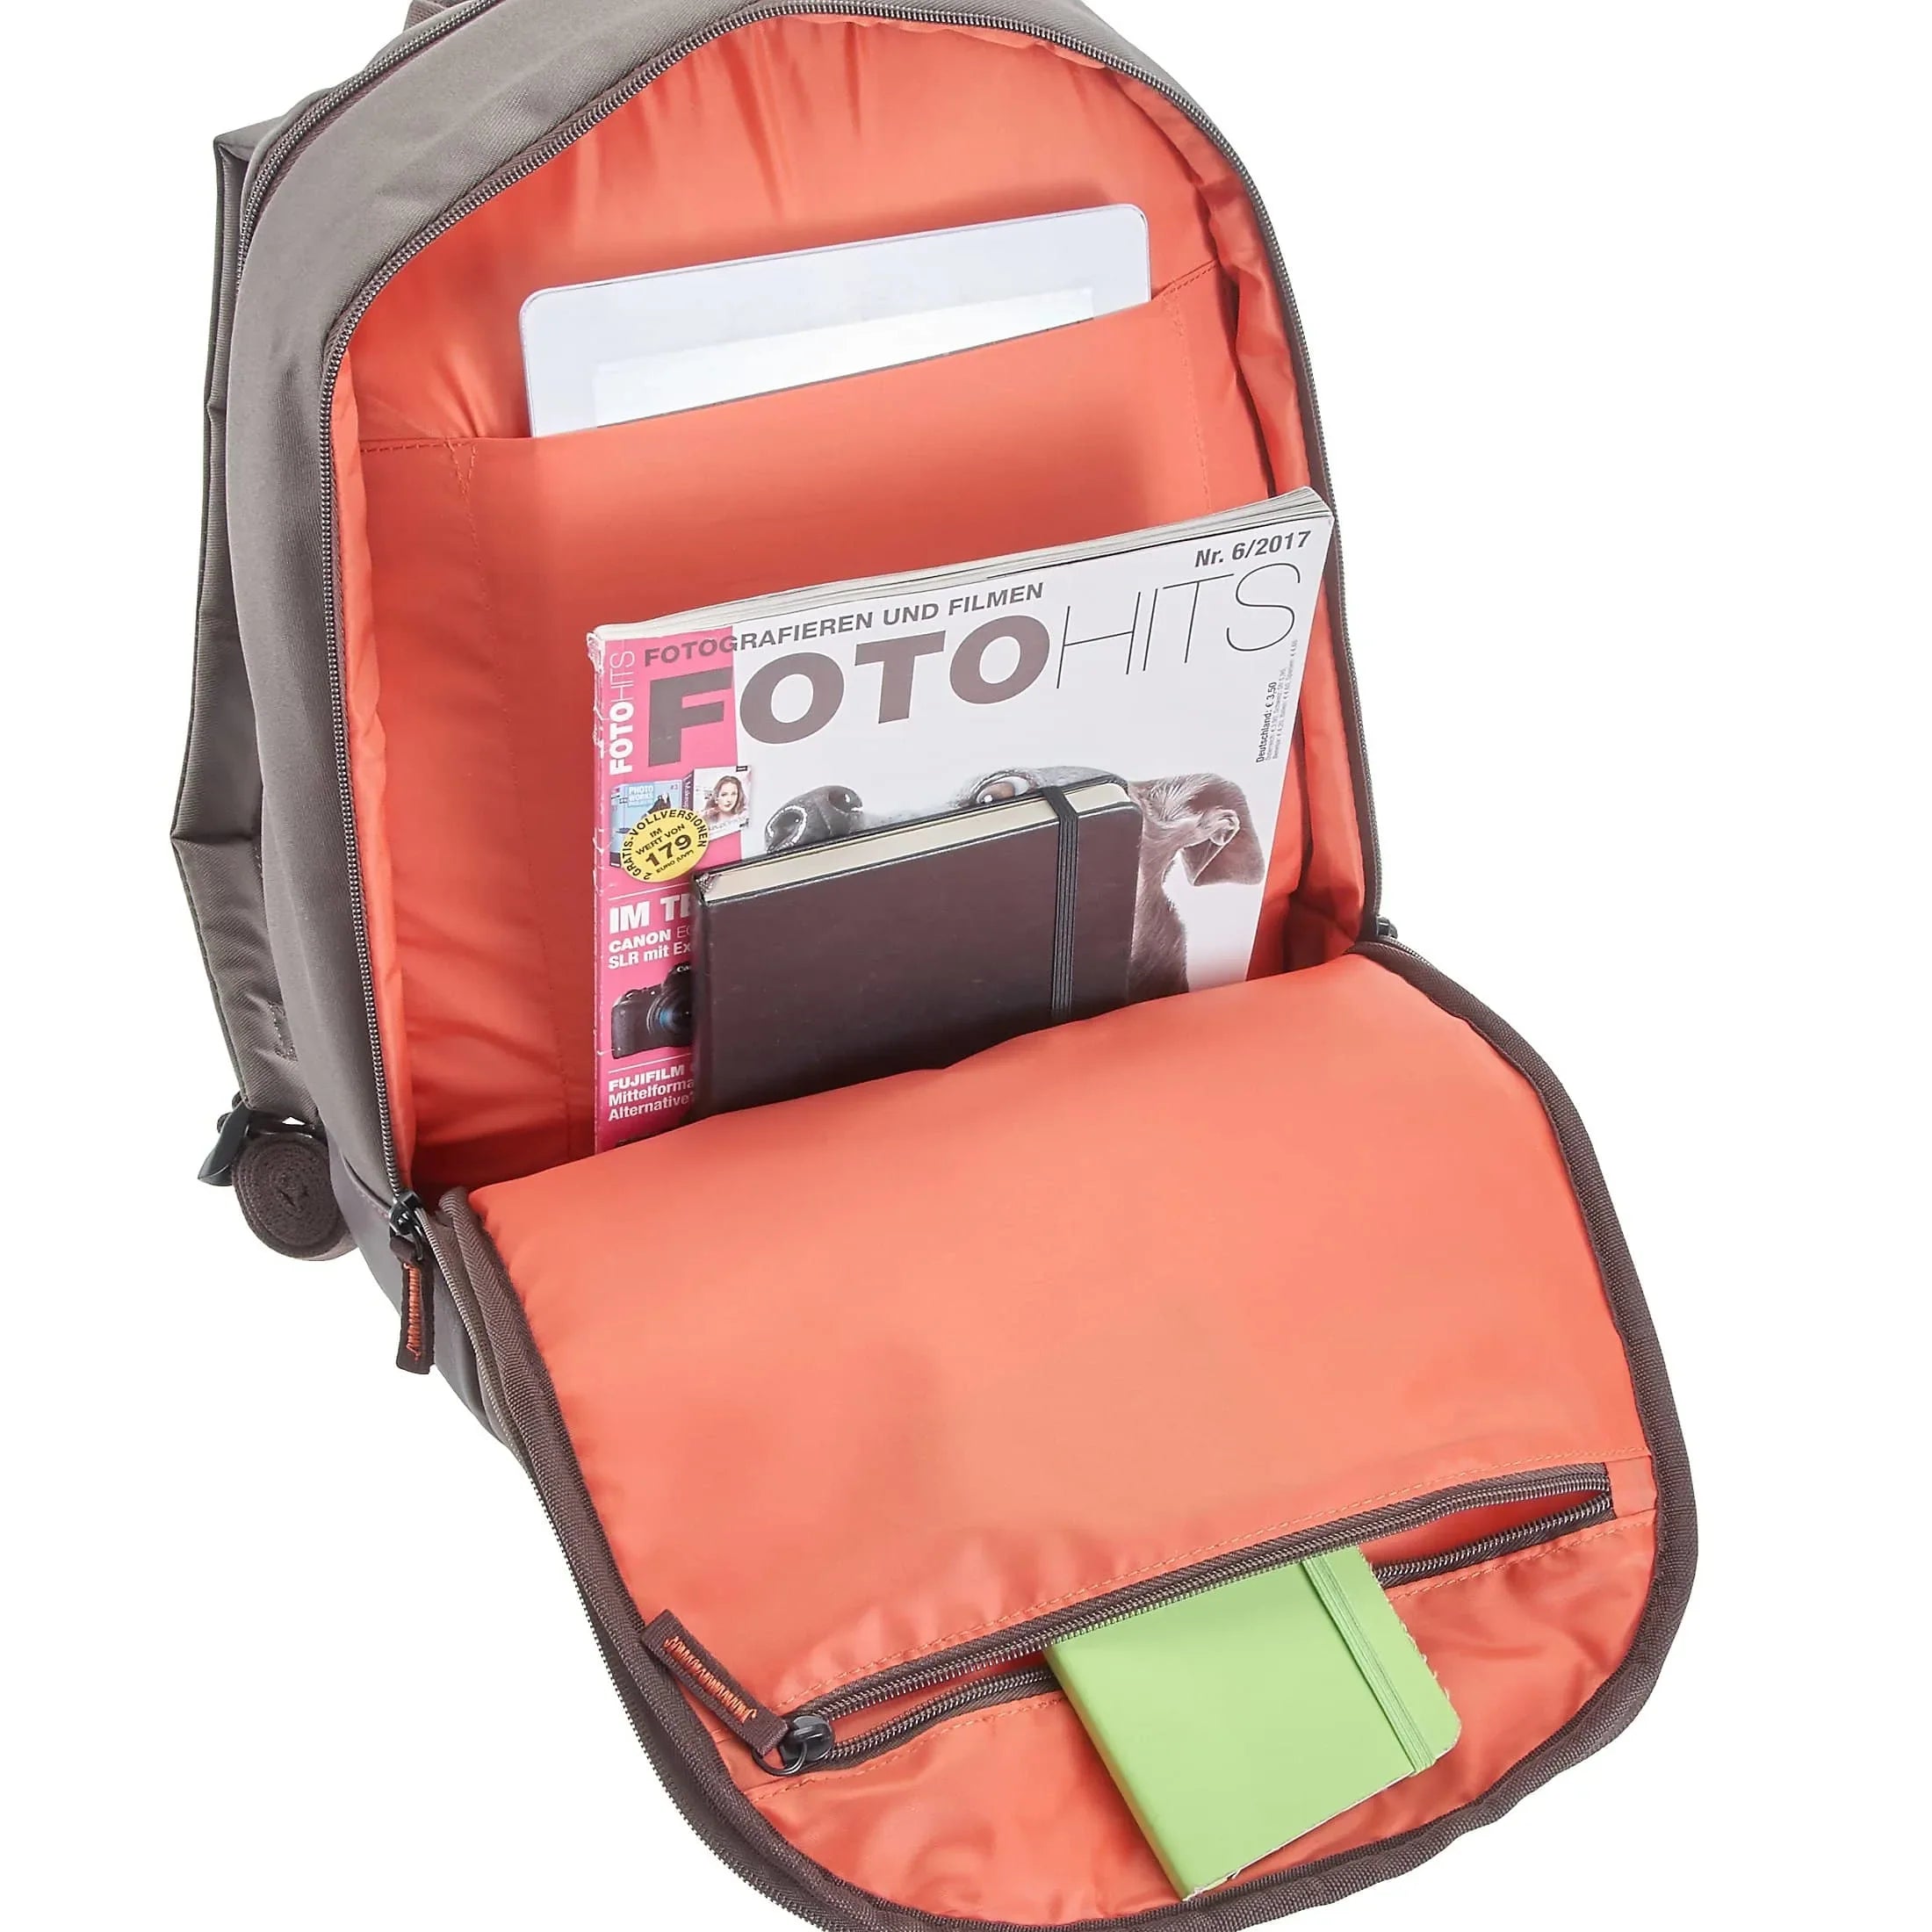 Samsonite Rockwell laptop backpack 43 cm - gray